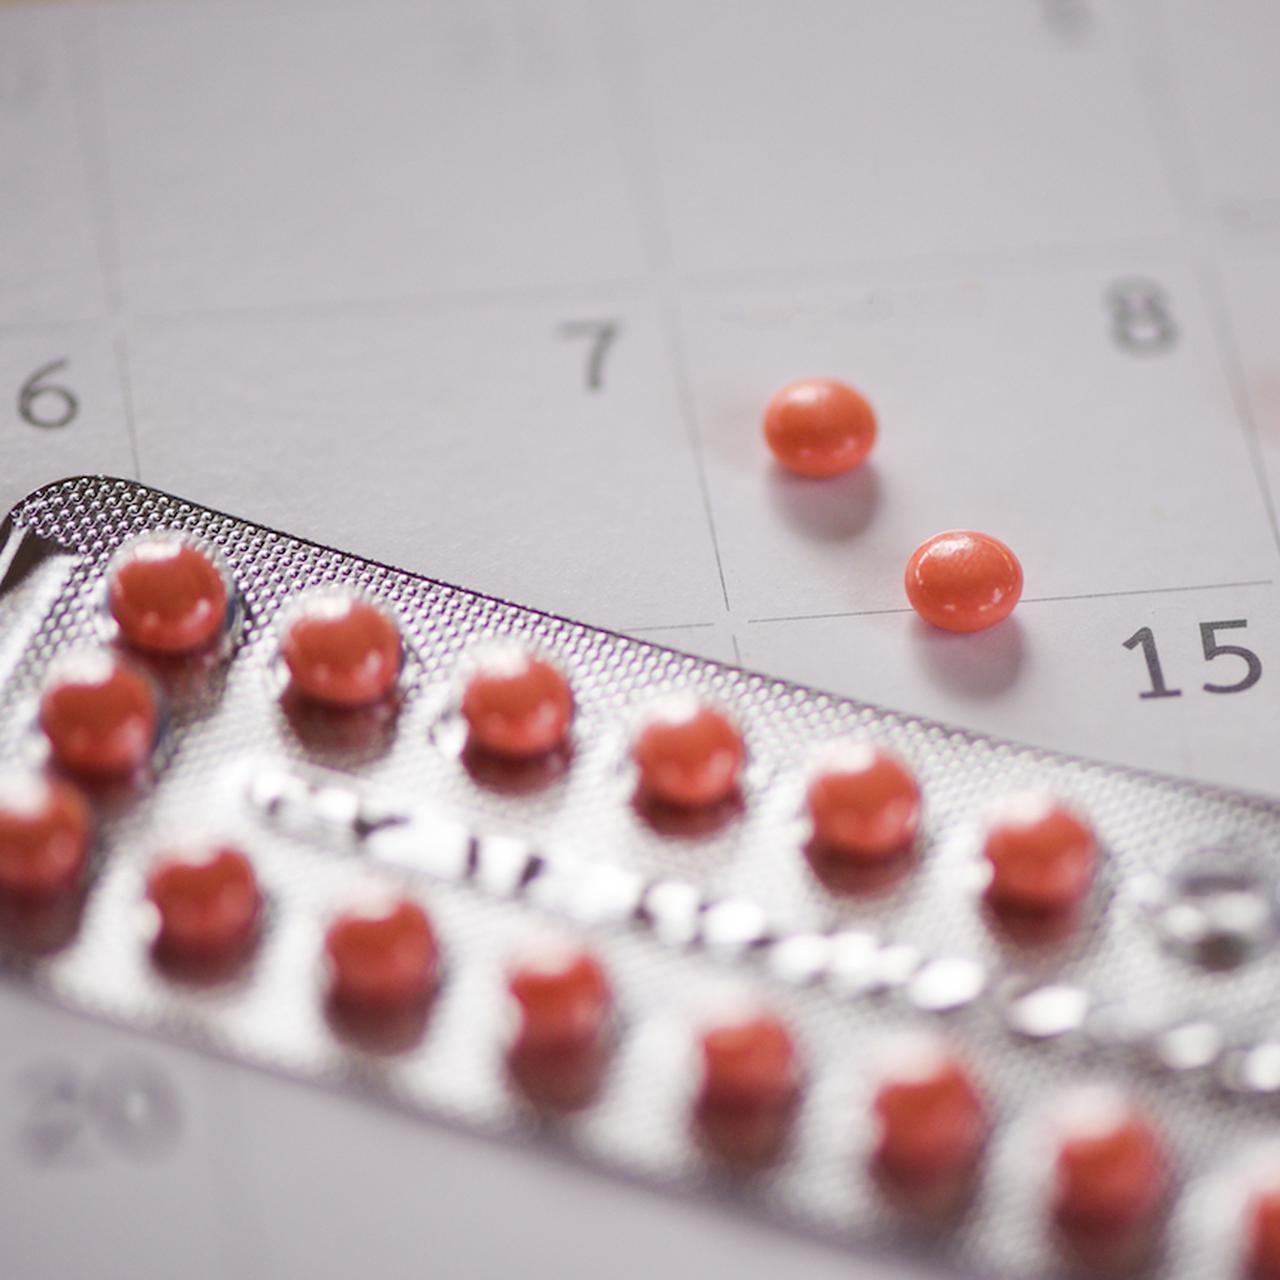 Правда и мифы о противозачаточных таблетках: можно ли забеременеть,  потолстеть и другие популярные вопросы | WMJ.ru